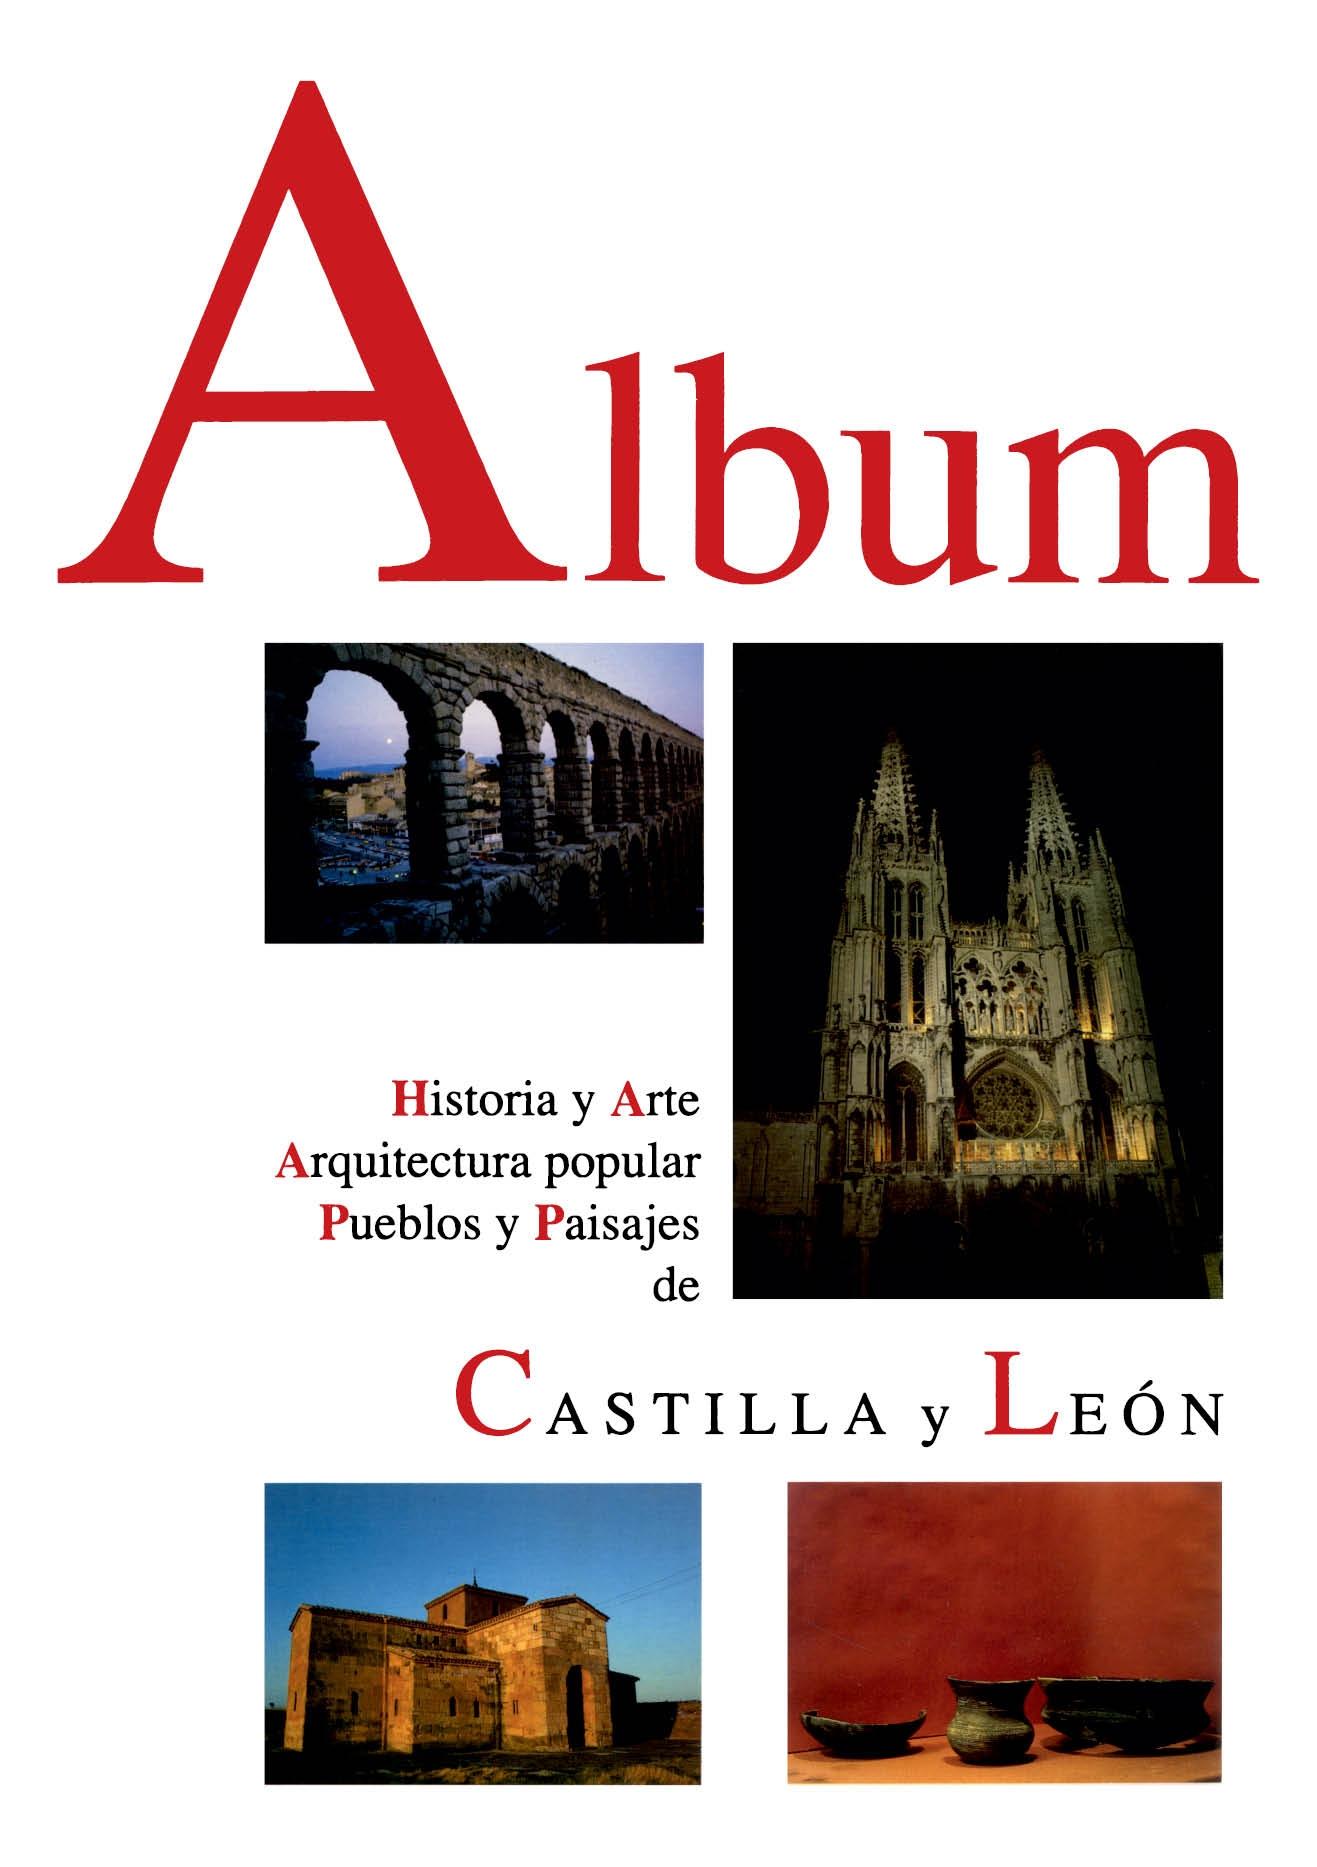 ALBUM. HISTORIA Y ARTE, ARQUITECTURA POPULAR, PUEBLOS Y PAISAJES DE CASTILLA Y LEON "(ALBUM DE CASTILLA Y LEÓN)"